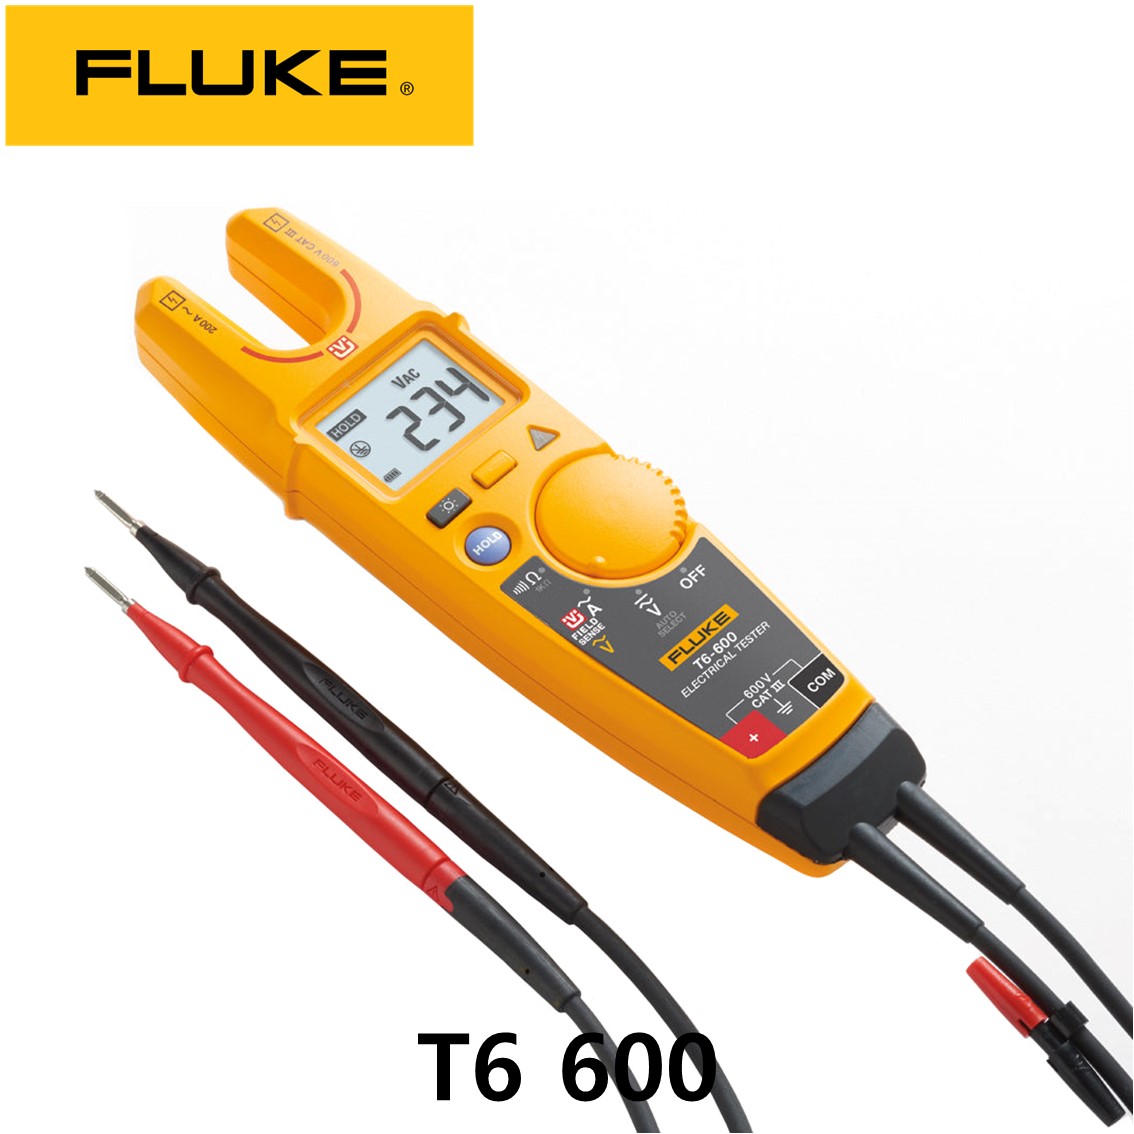 [ FLUKE T6 600 ] 정품 플루크 오픈형 클램프미터 (600V,200A)